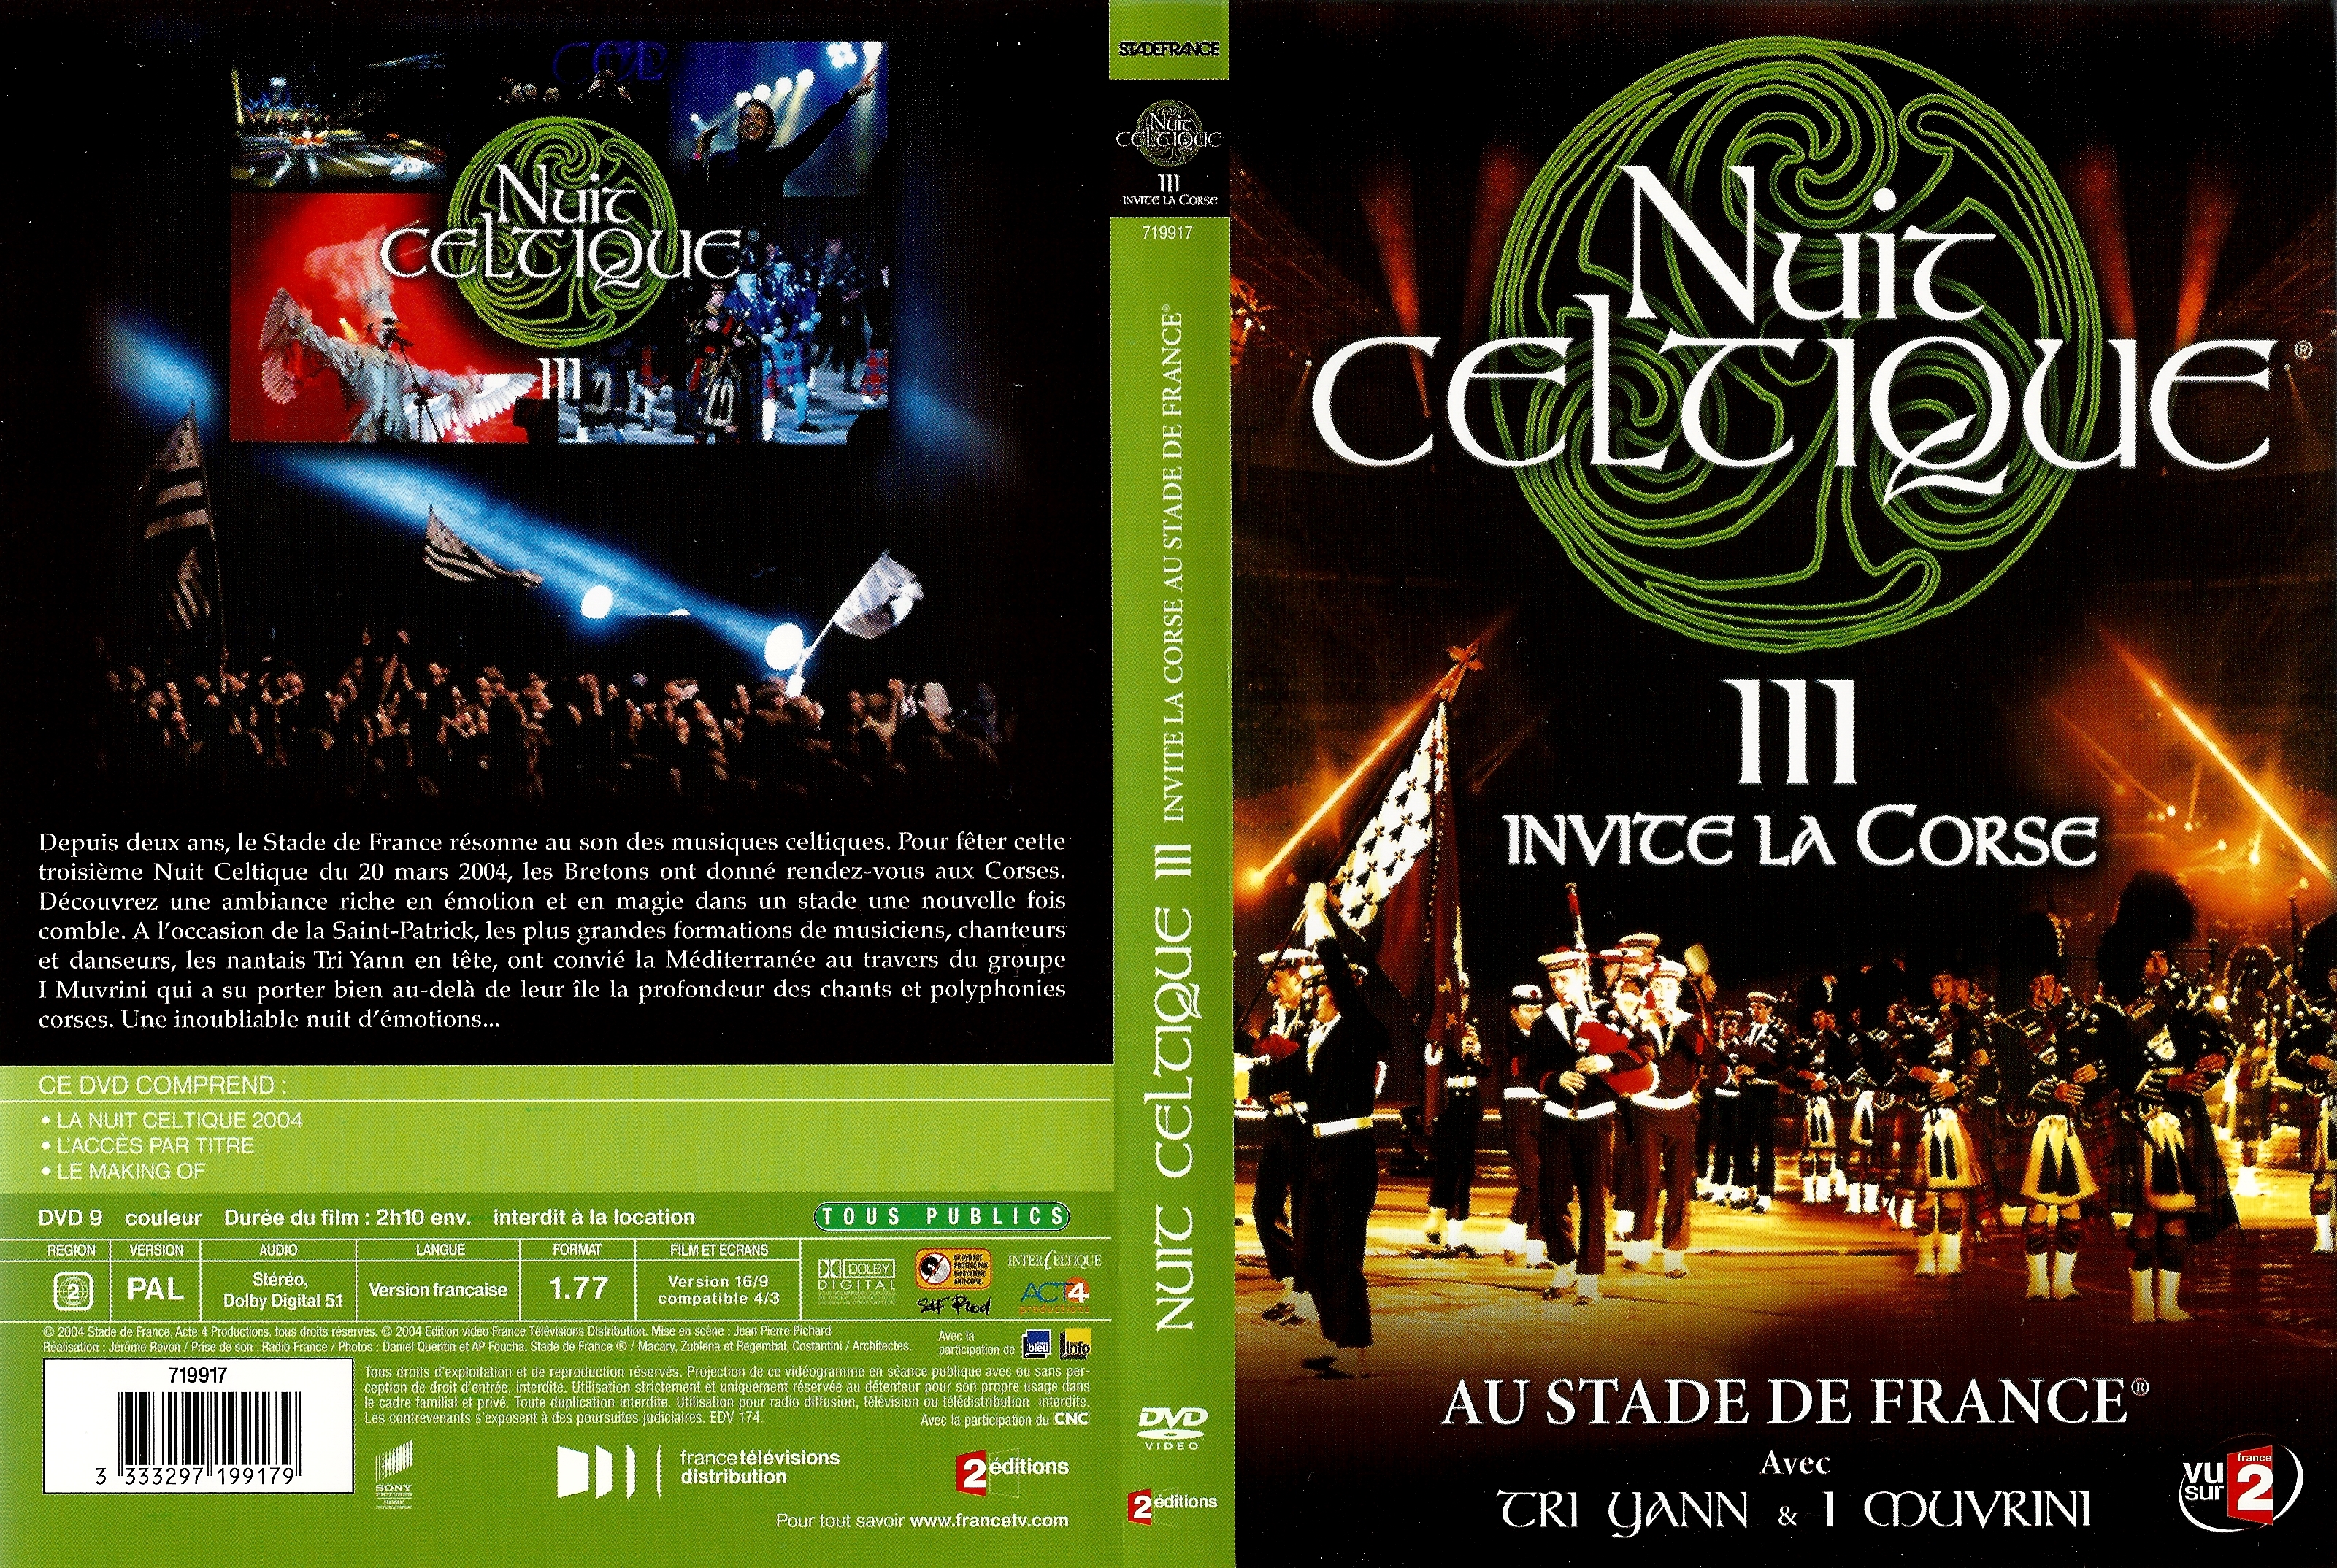 Jaquette DVD Nuit celtique 3 v2